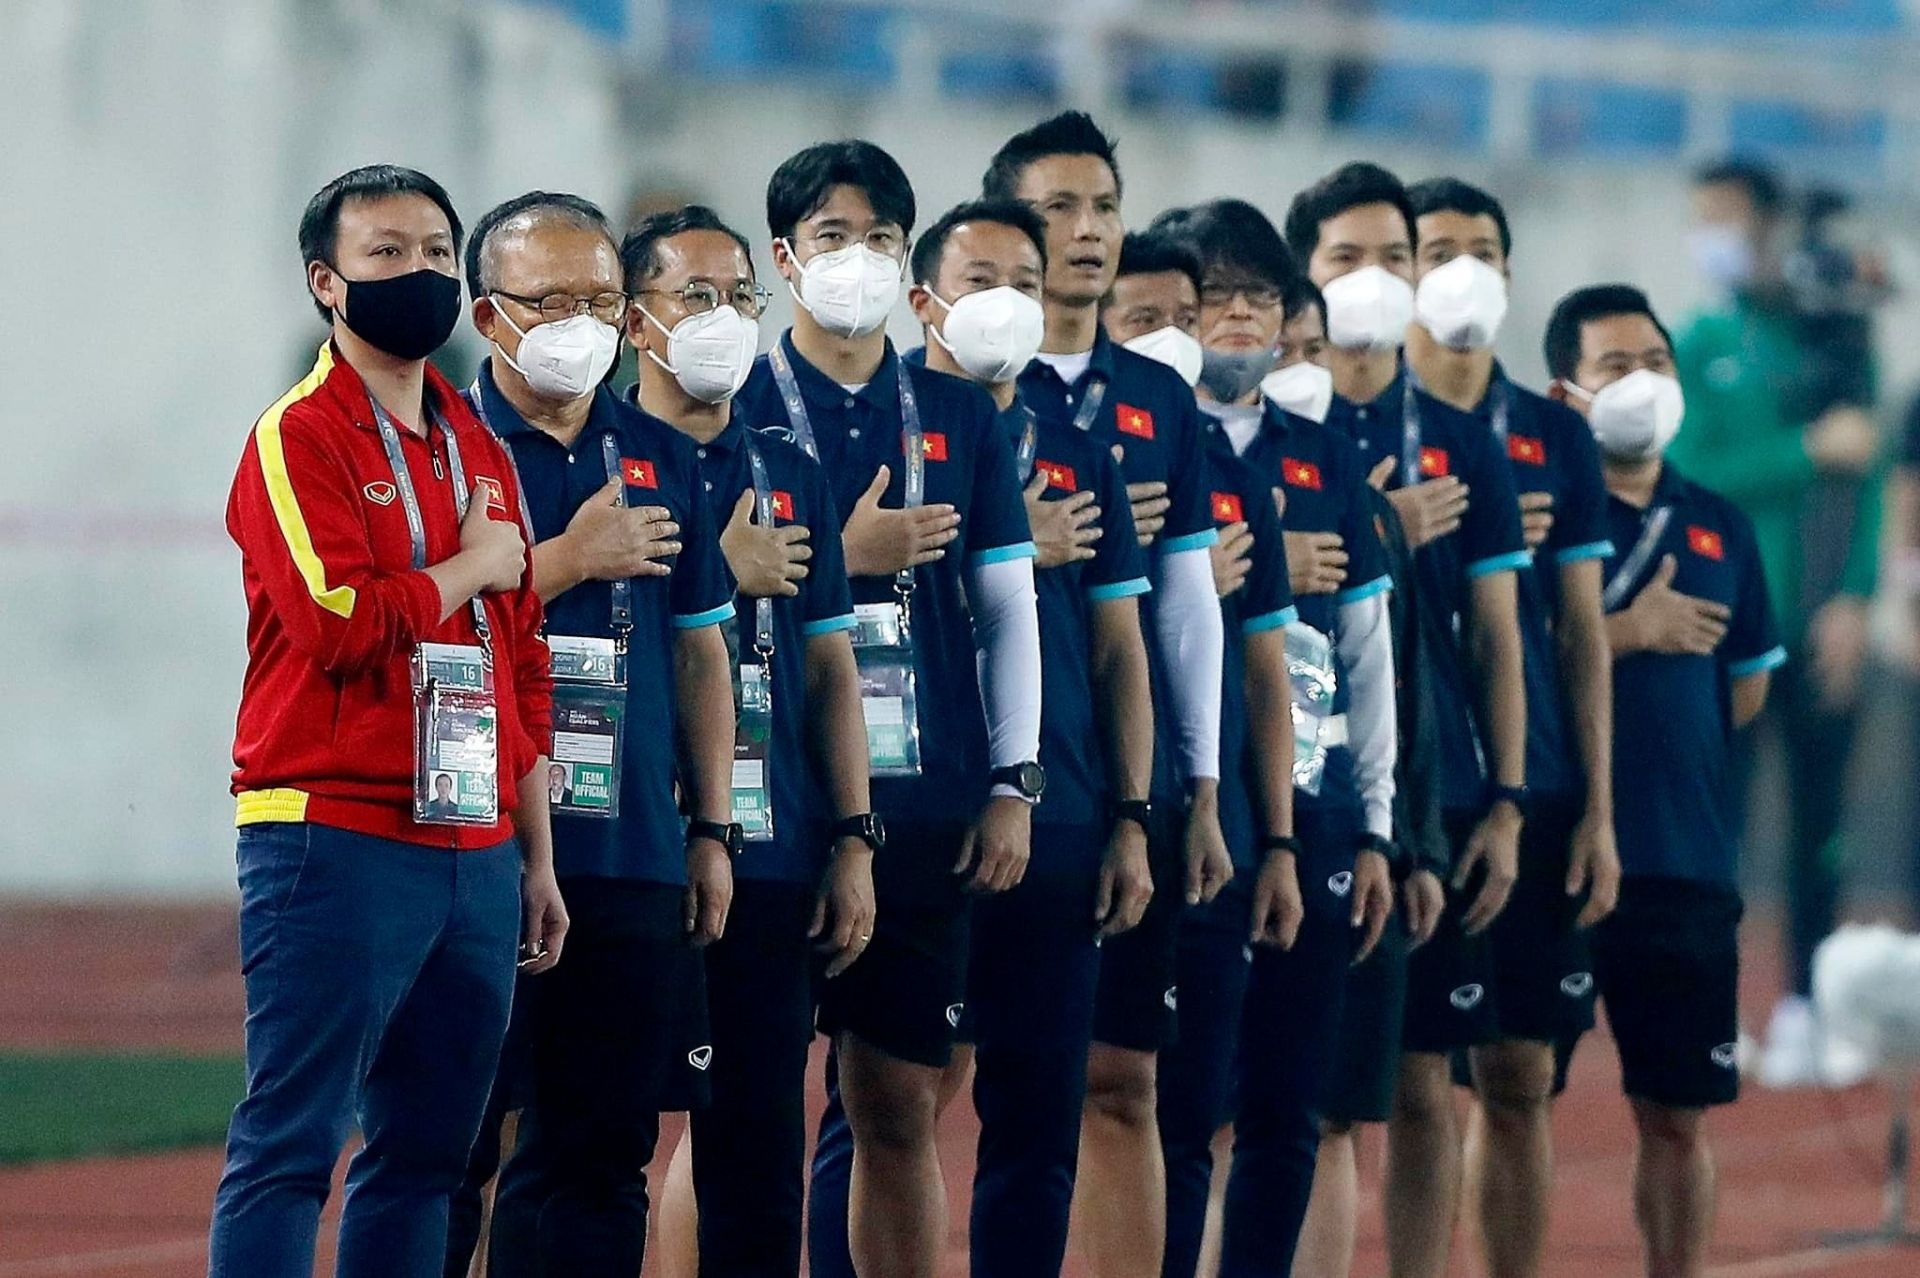 Trợ lý thể lực Park Sung Gyun (thứ 4 từ trái qua) từng cùng HLV Park Hang Seo thành công với bóng đá Việt Nam